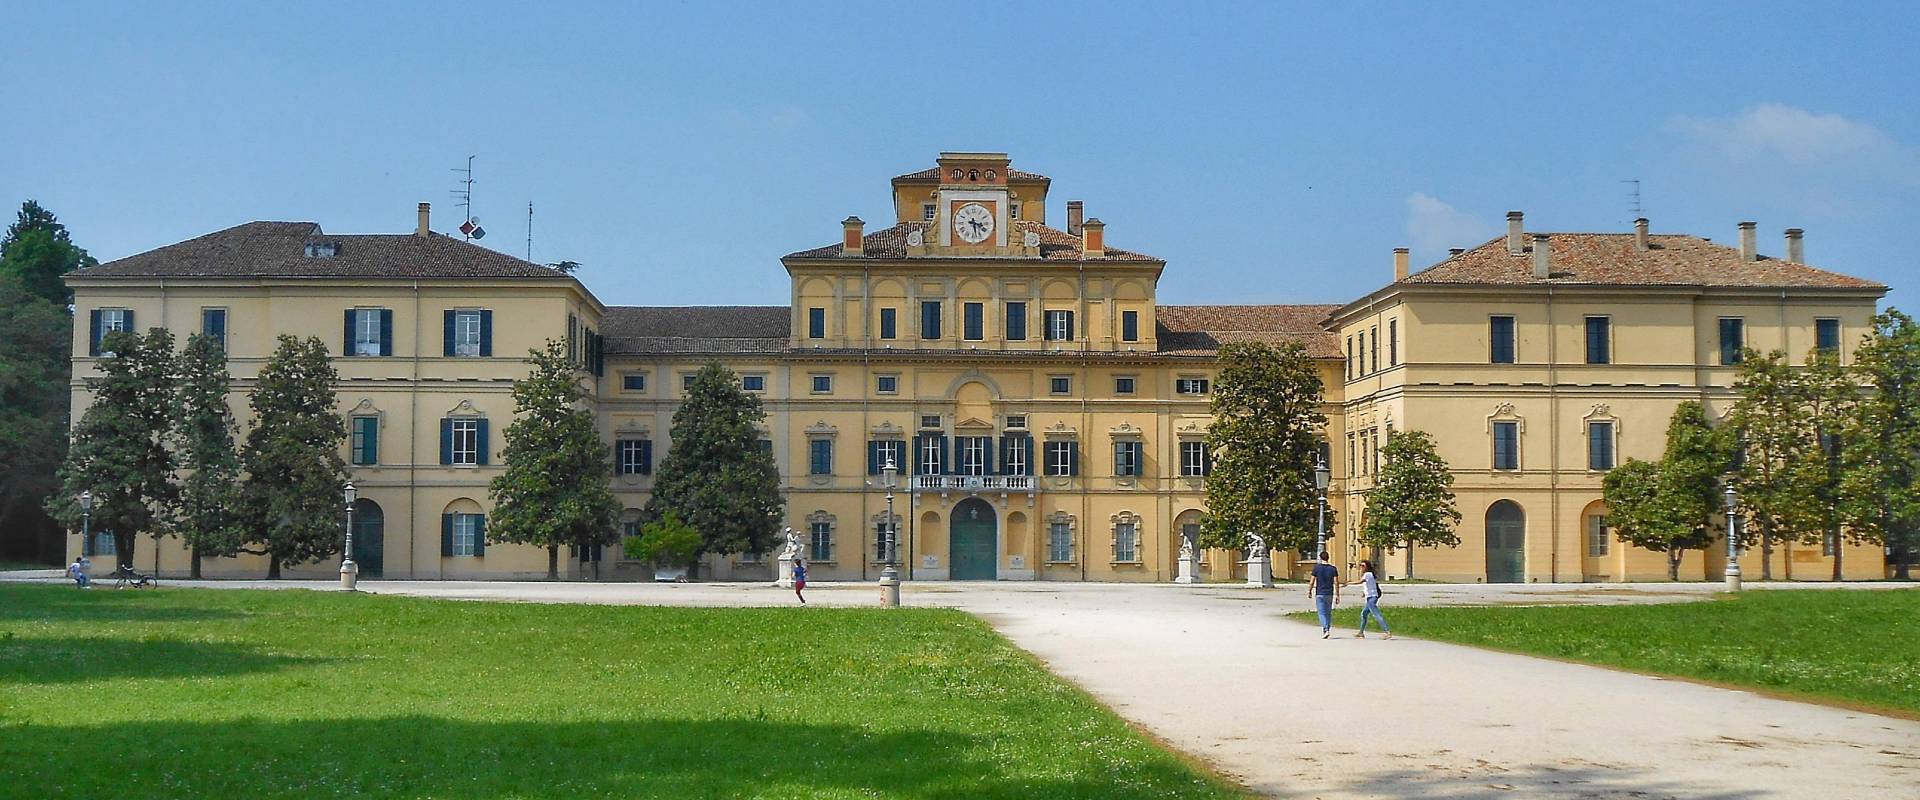 Palazzo del giardino Ducale photo by Magi2196